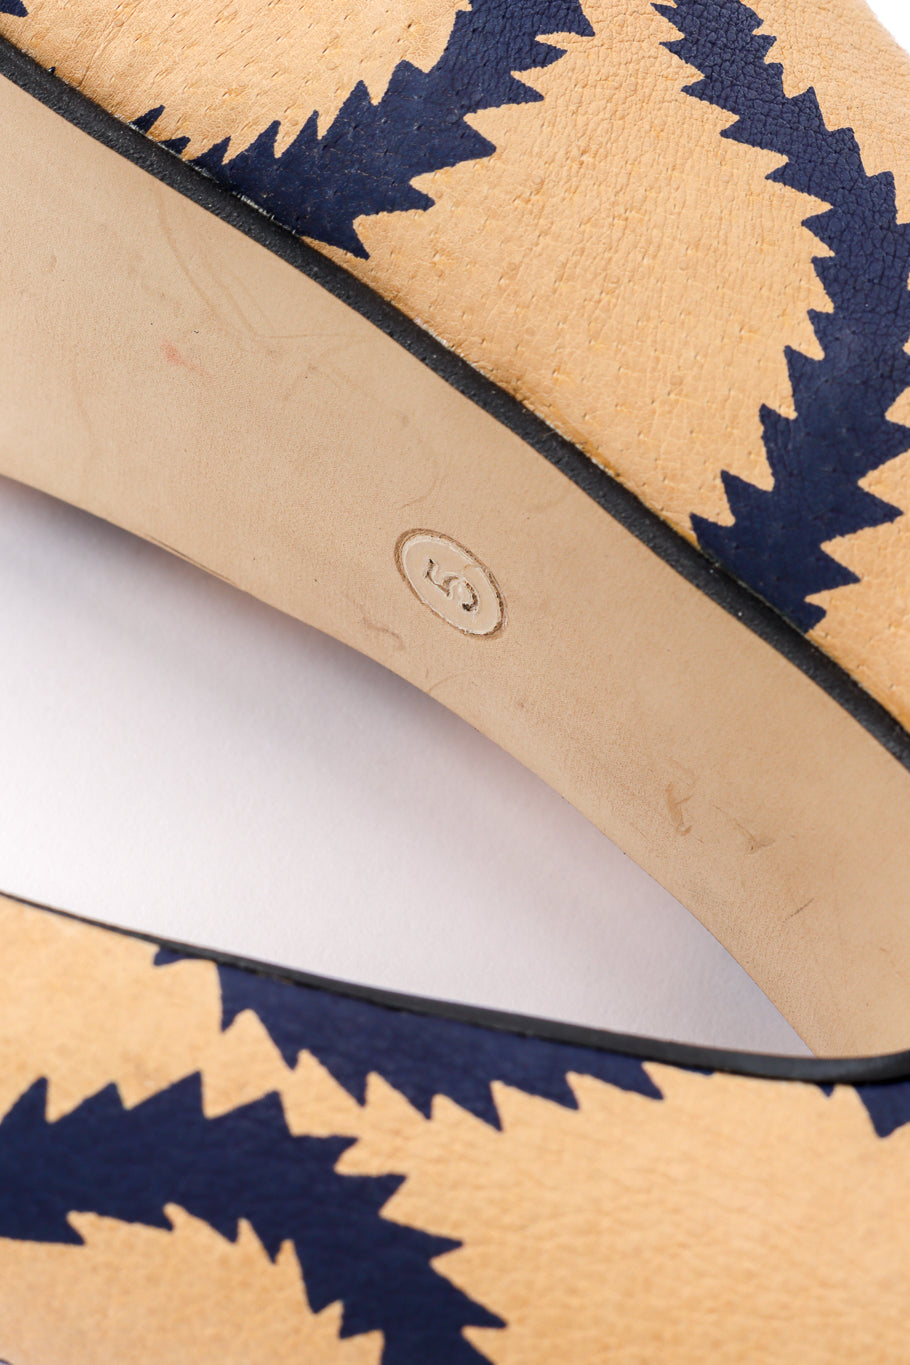 Vivienne Westwood 2013 F/W Squiggle Print Leather Court Shoe shoe size closeup @recessla